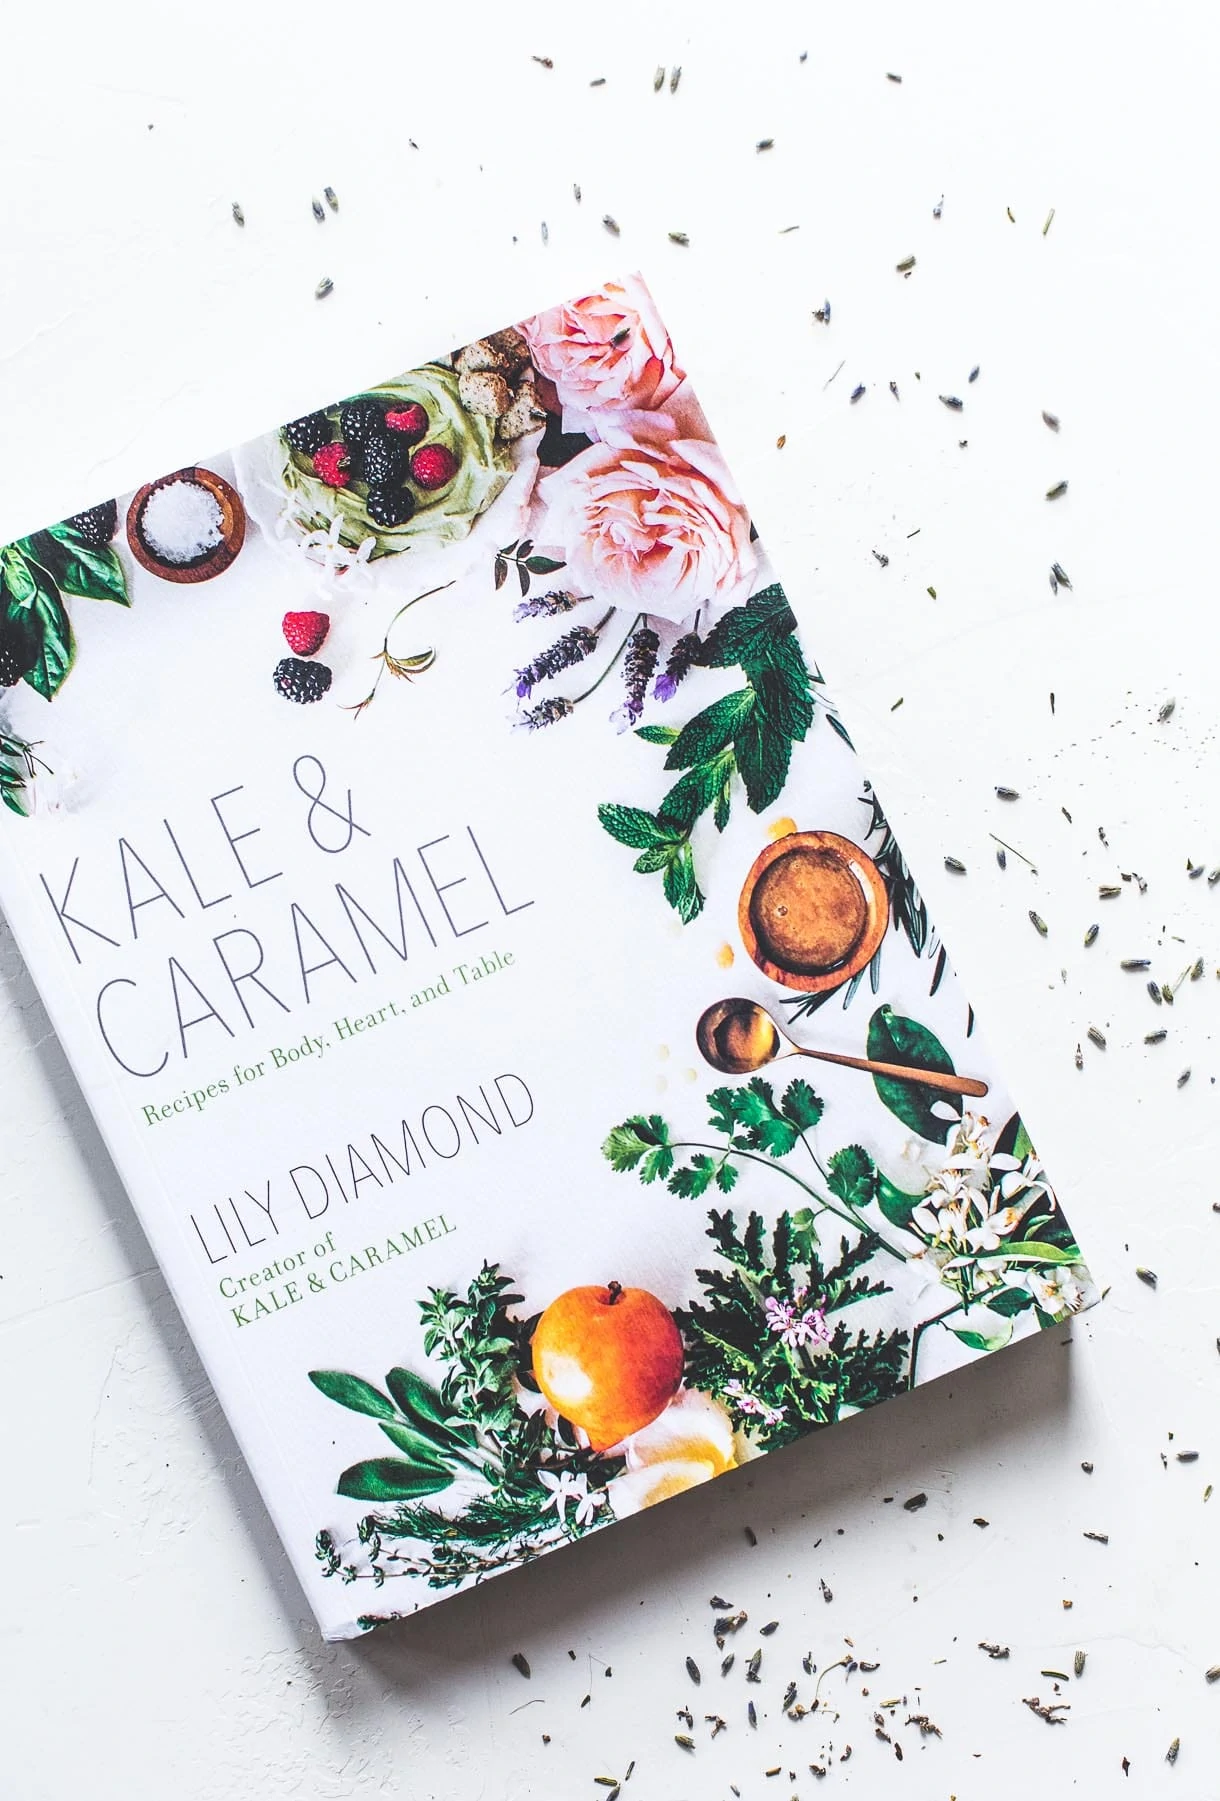 Kale & Caramel cookbook